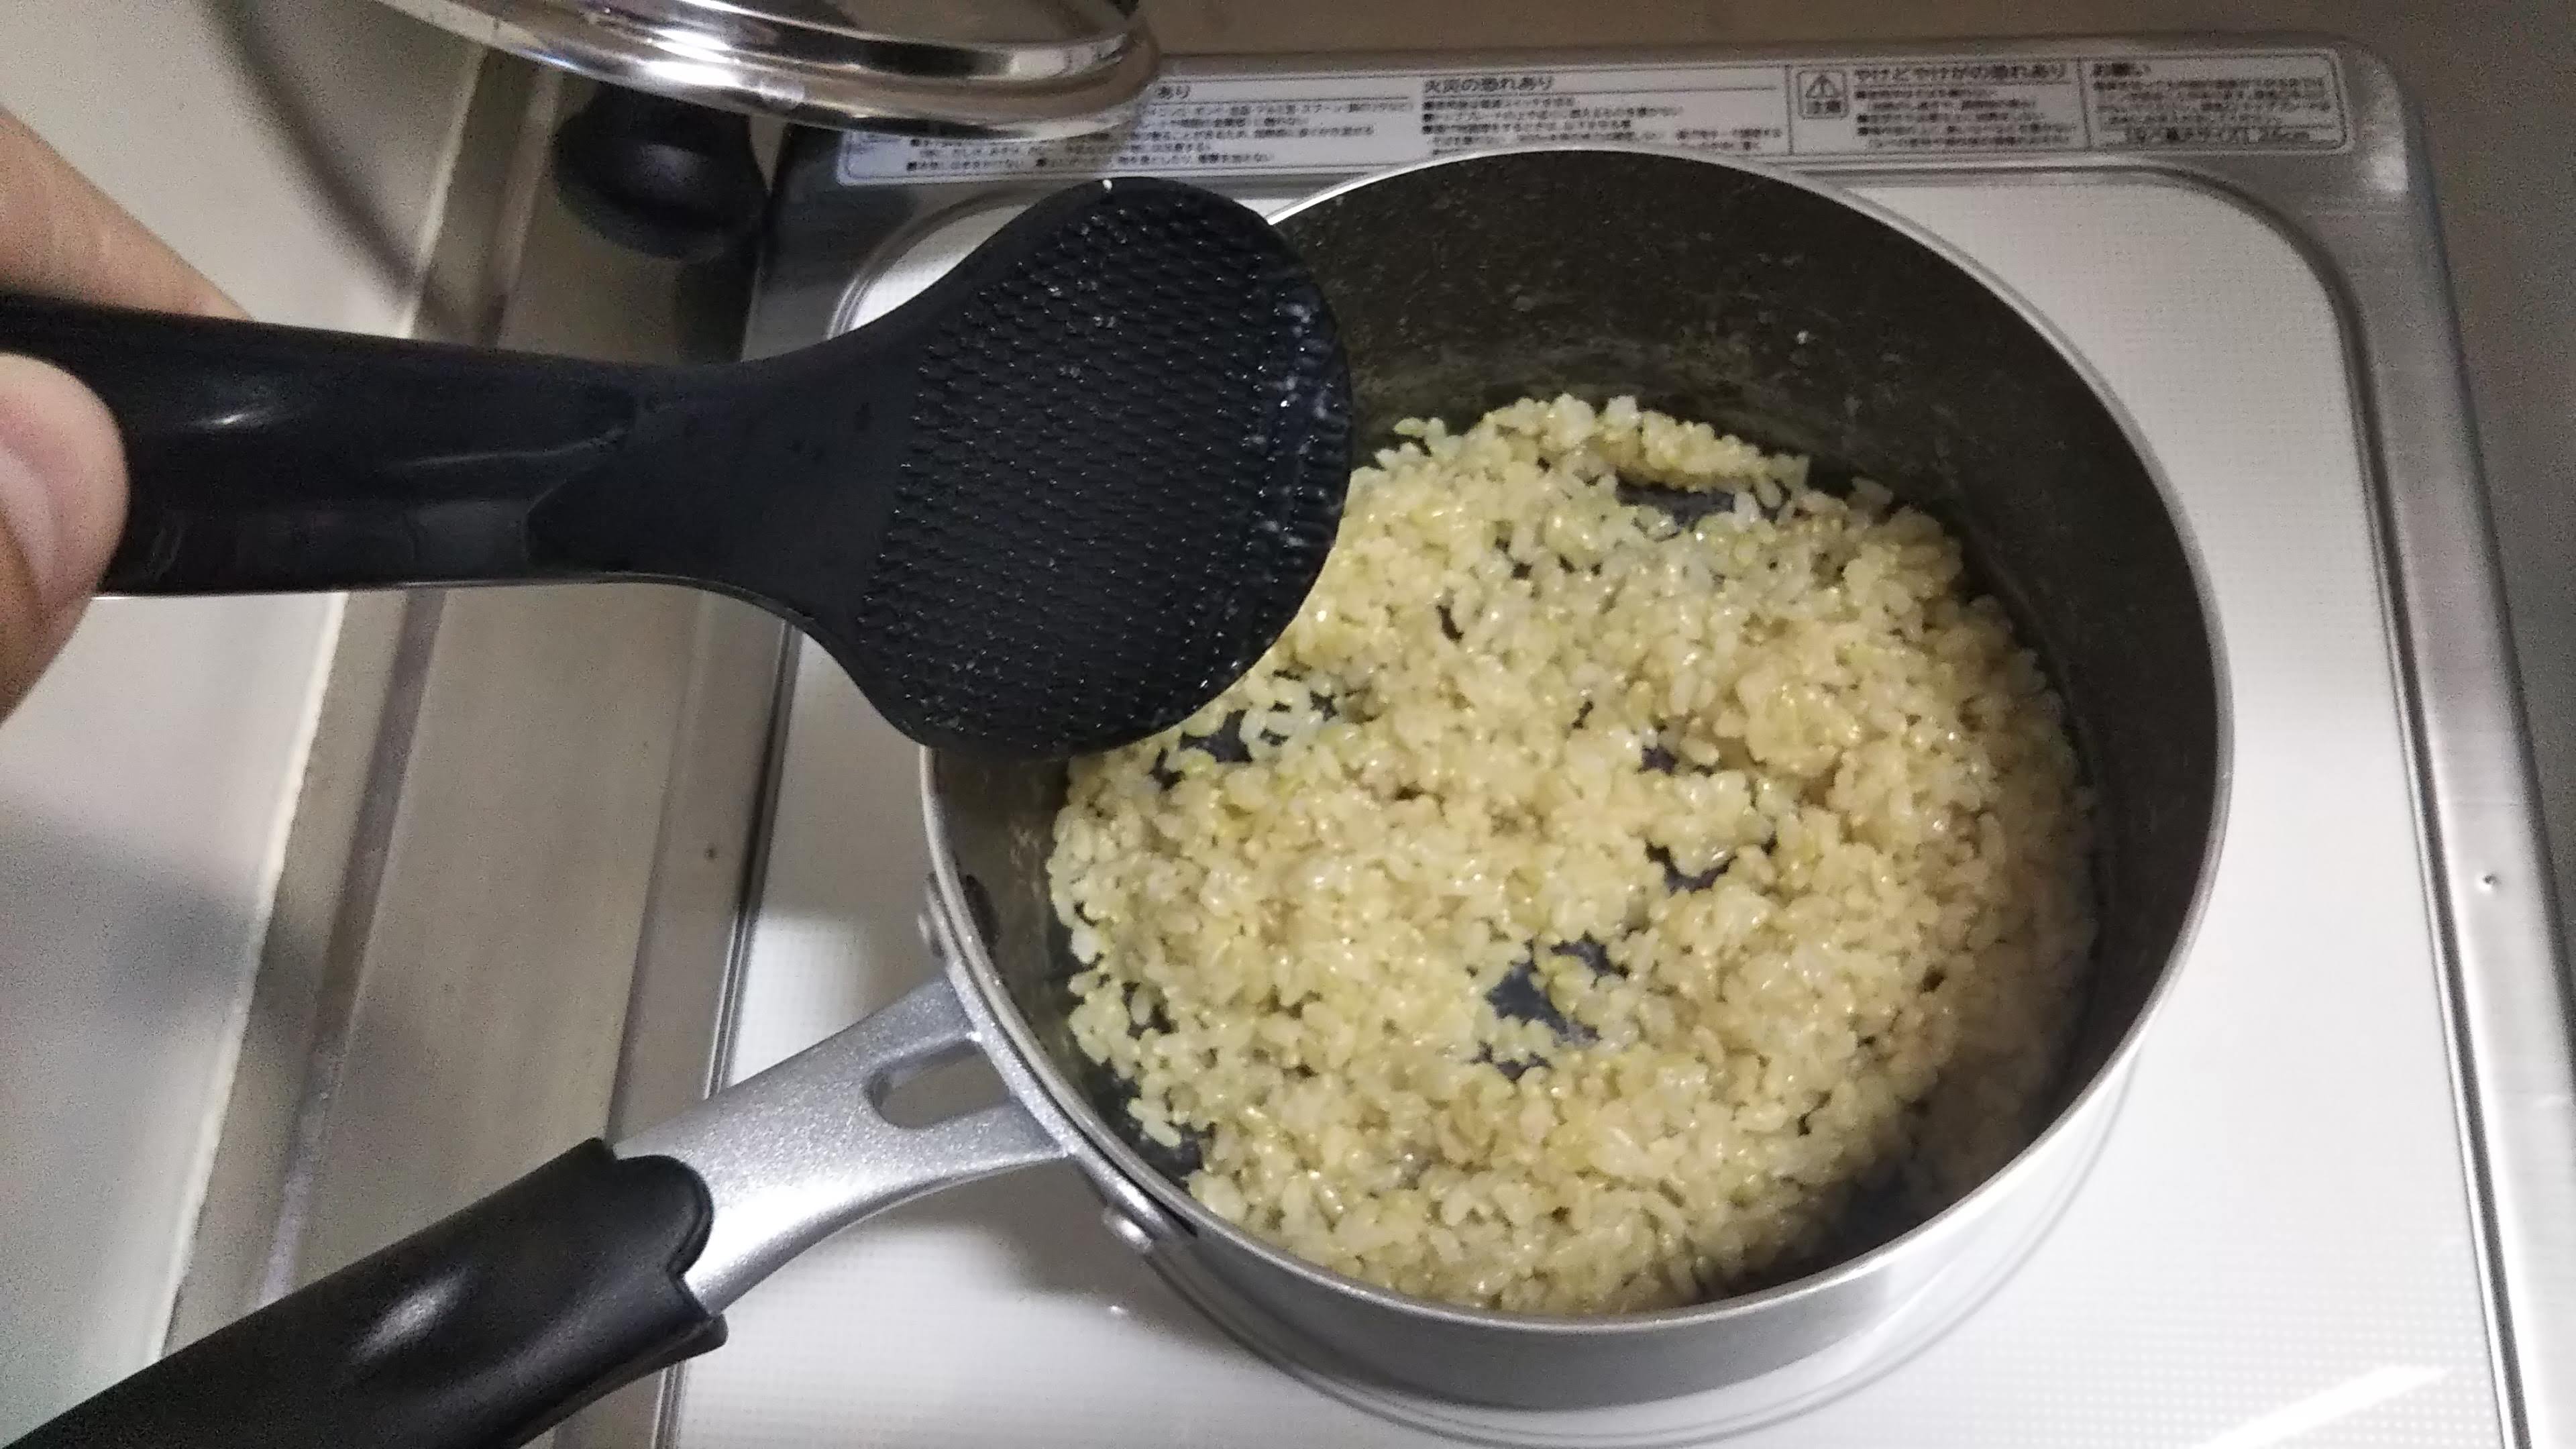 ミニマリストたるもの鍋で玄米を炊飯して 炊飯器を断捨離できるか アラフォーミニマリストの２人暮らしライフハック